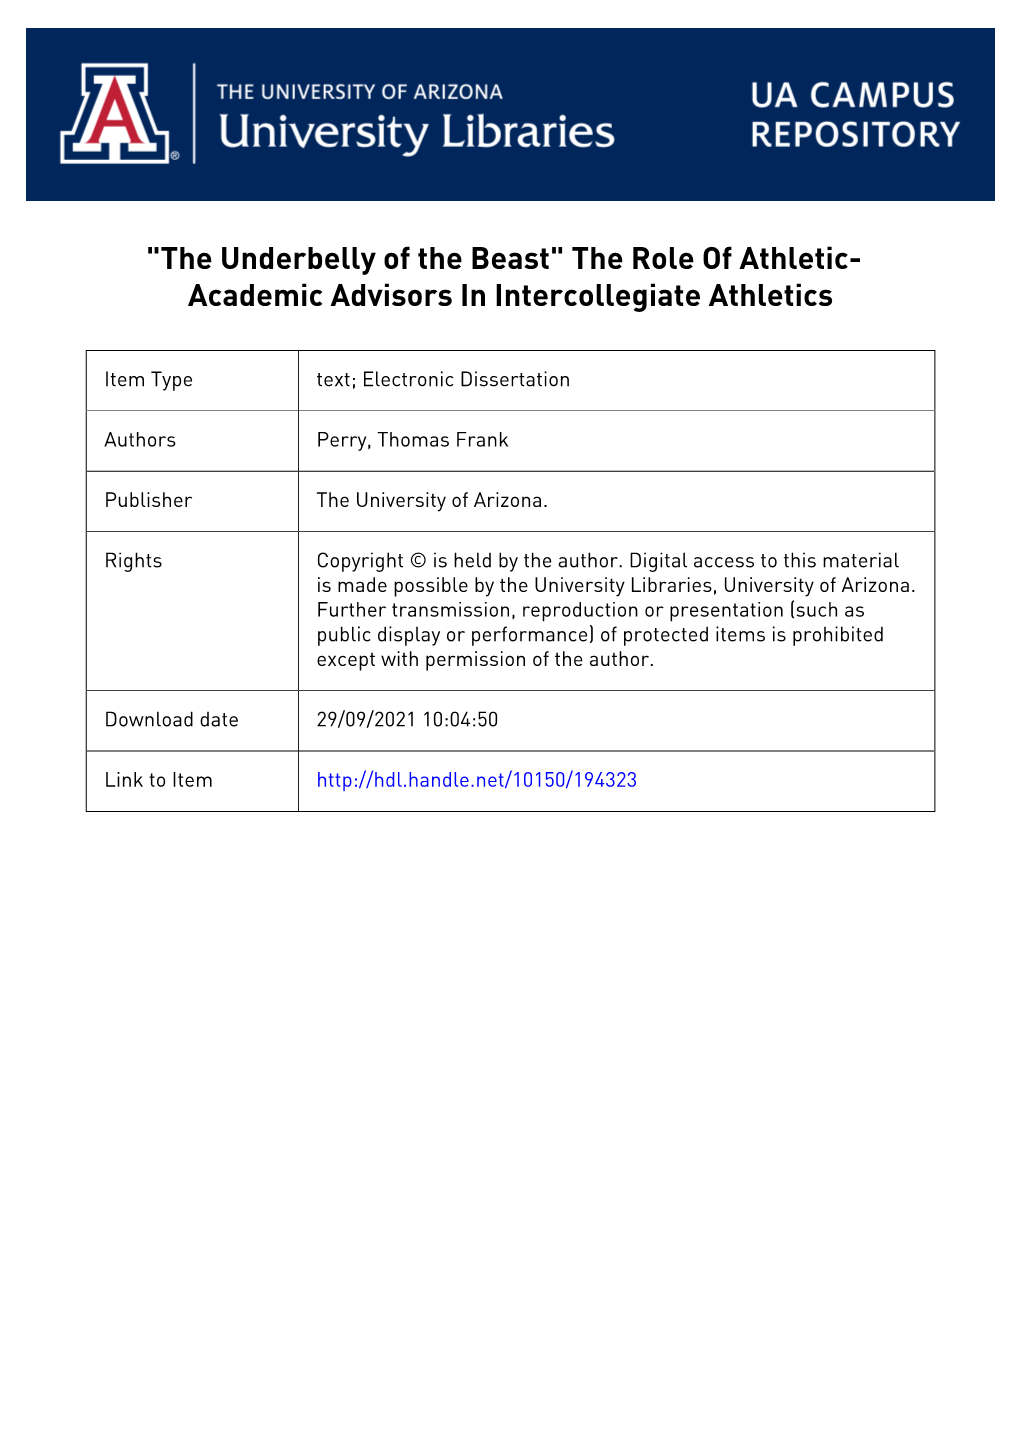 The Role of Athletic-Academic Advisors in Intercollegiate Athletics